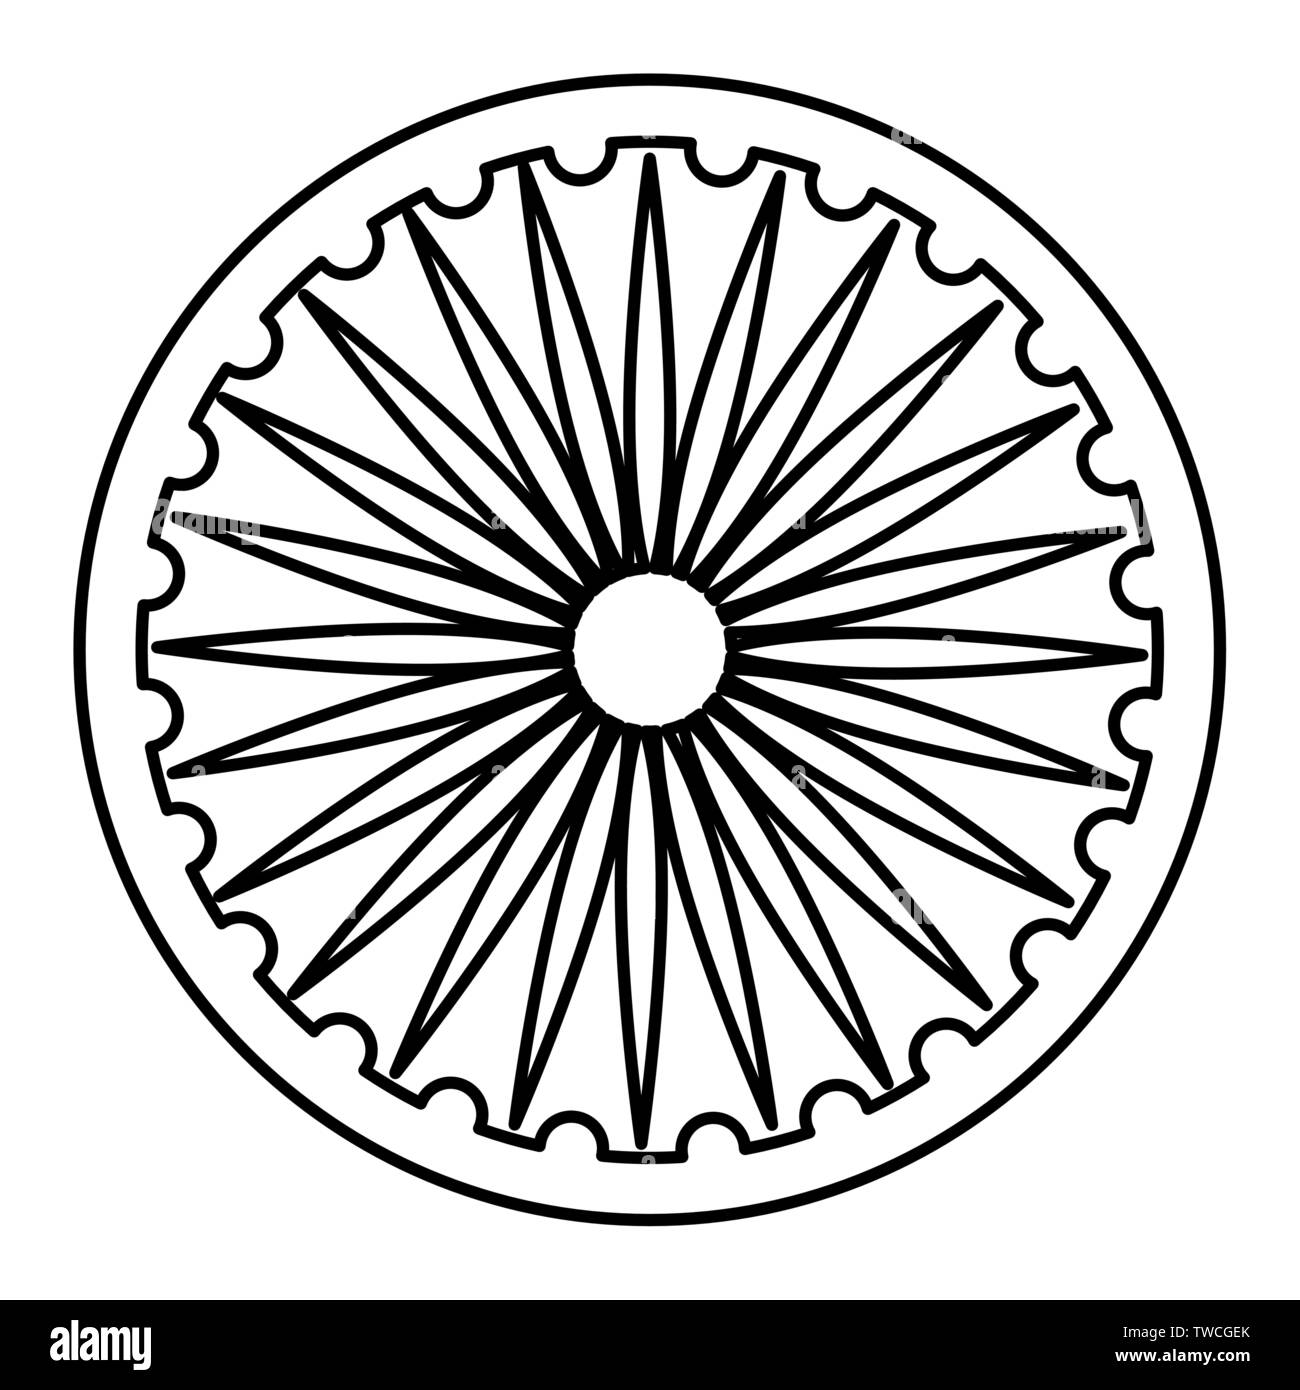 How To Draw Ashoka Chakra  Indian Flag Drawing  How to draw ashoka chakra  step by step  YoKidz  YouTube